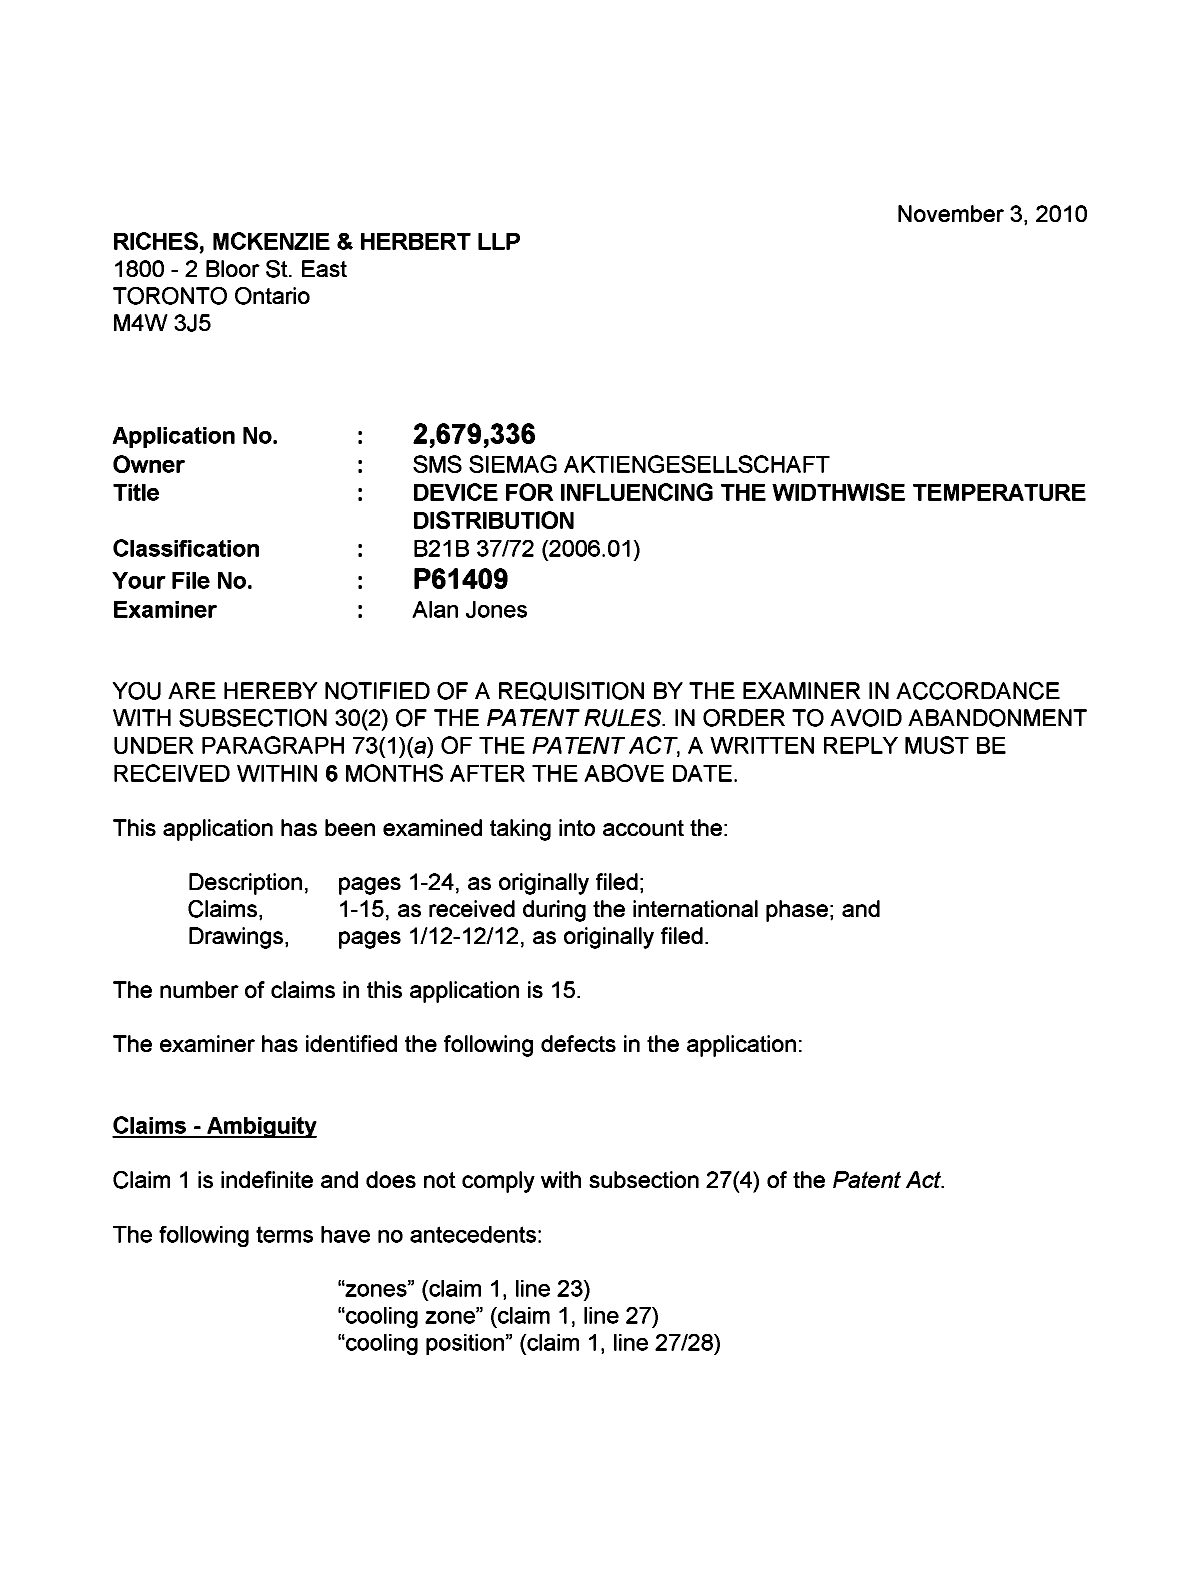 Document de brevet canadien 2679336. Poursuite-Amendment 20101103. Image 1 de 2